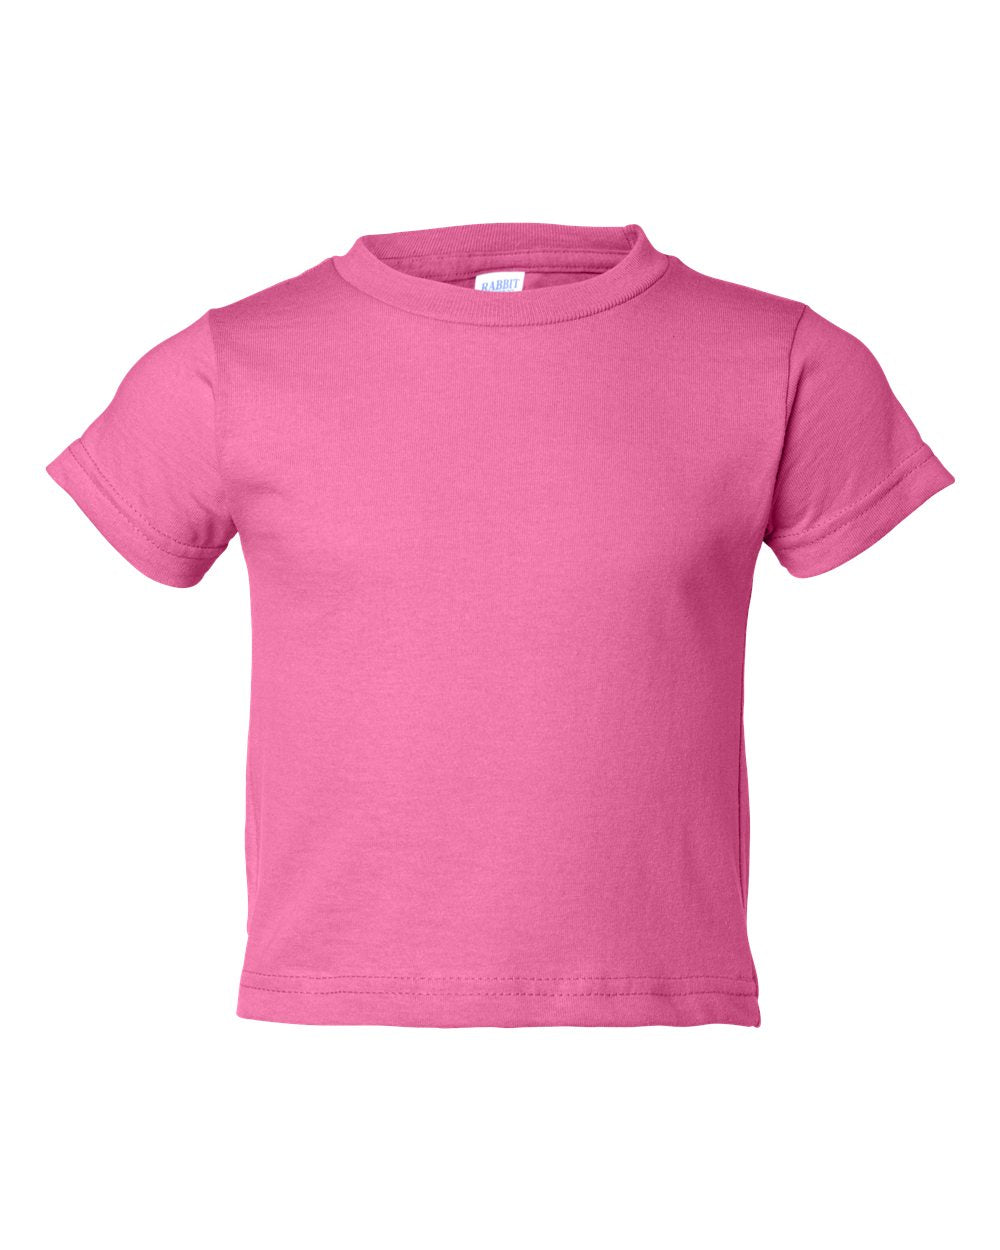 Toddler Jersey T-shirt, 100% Cotton, Raspberry